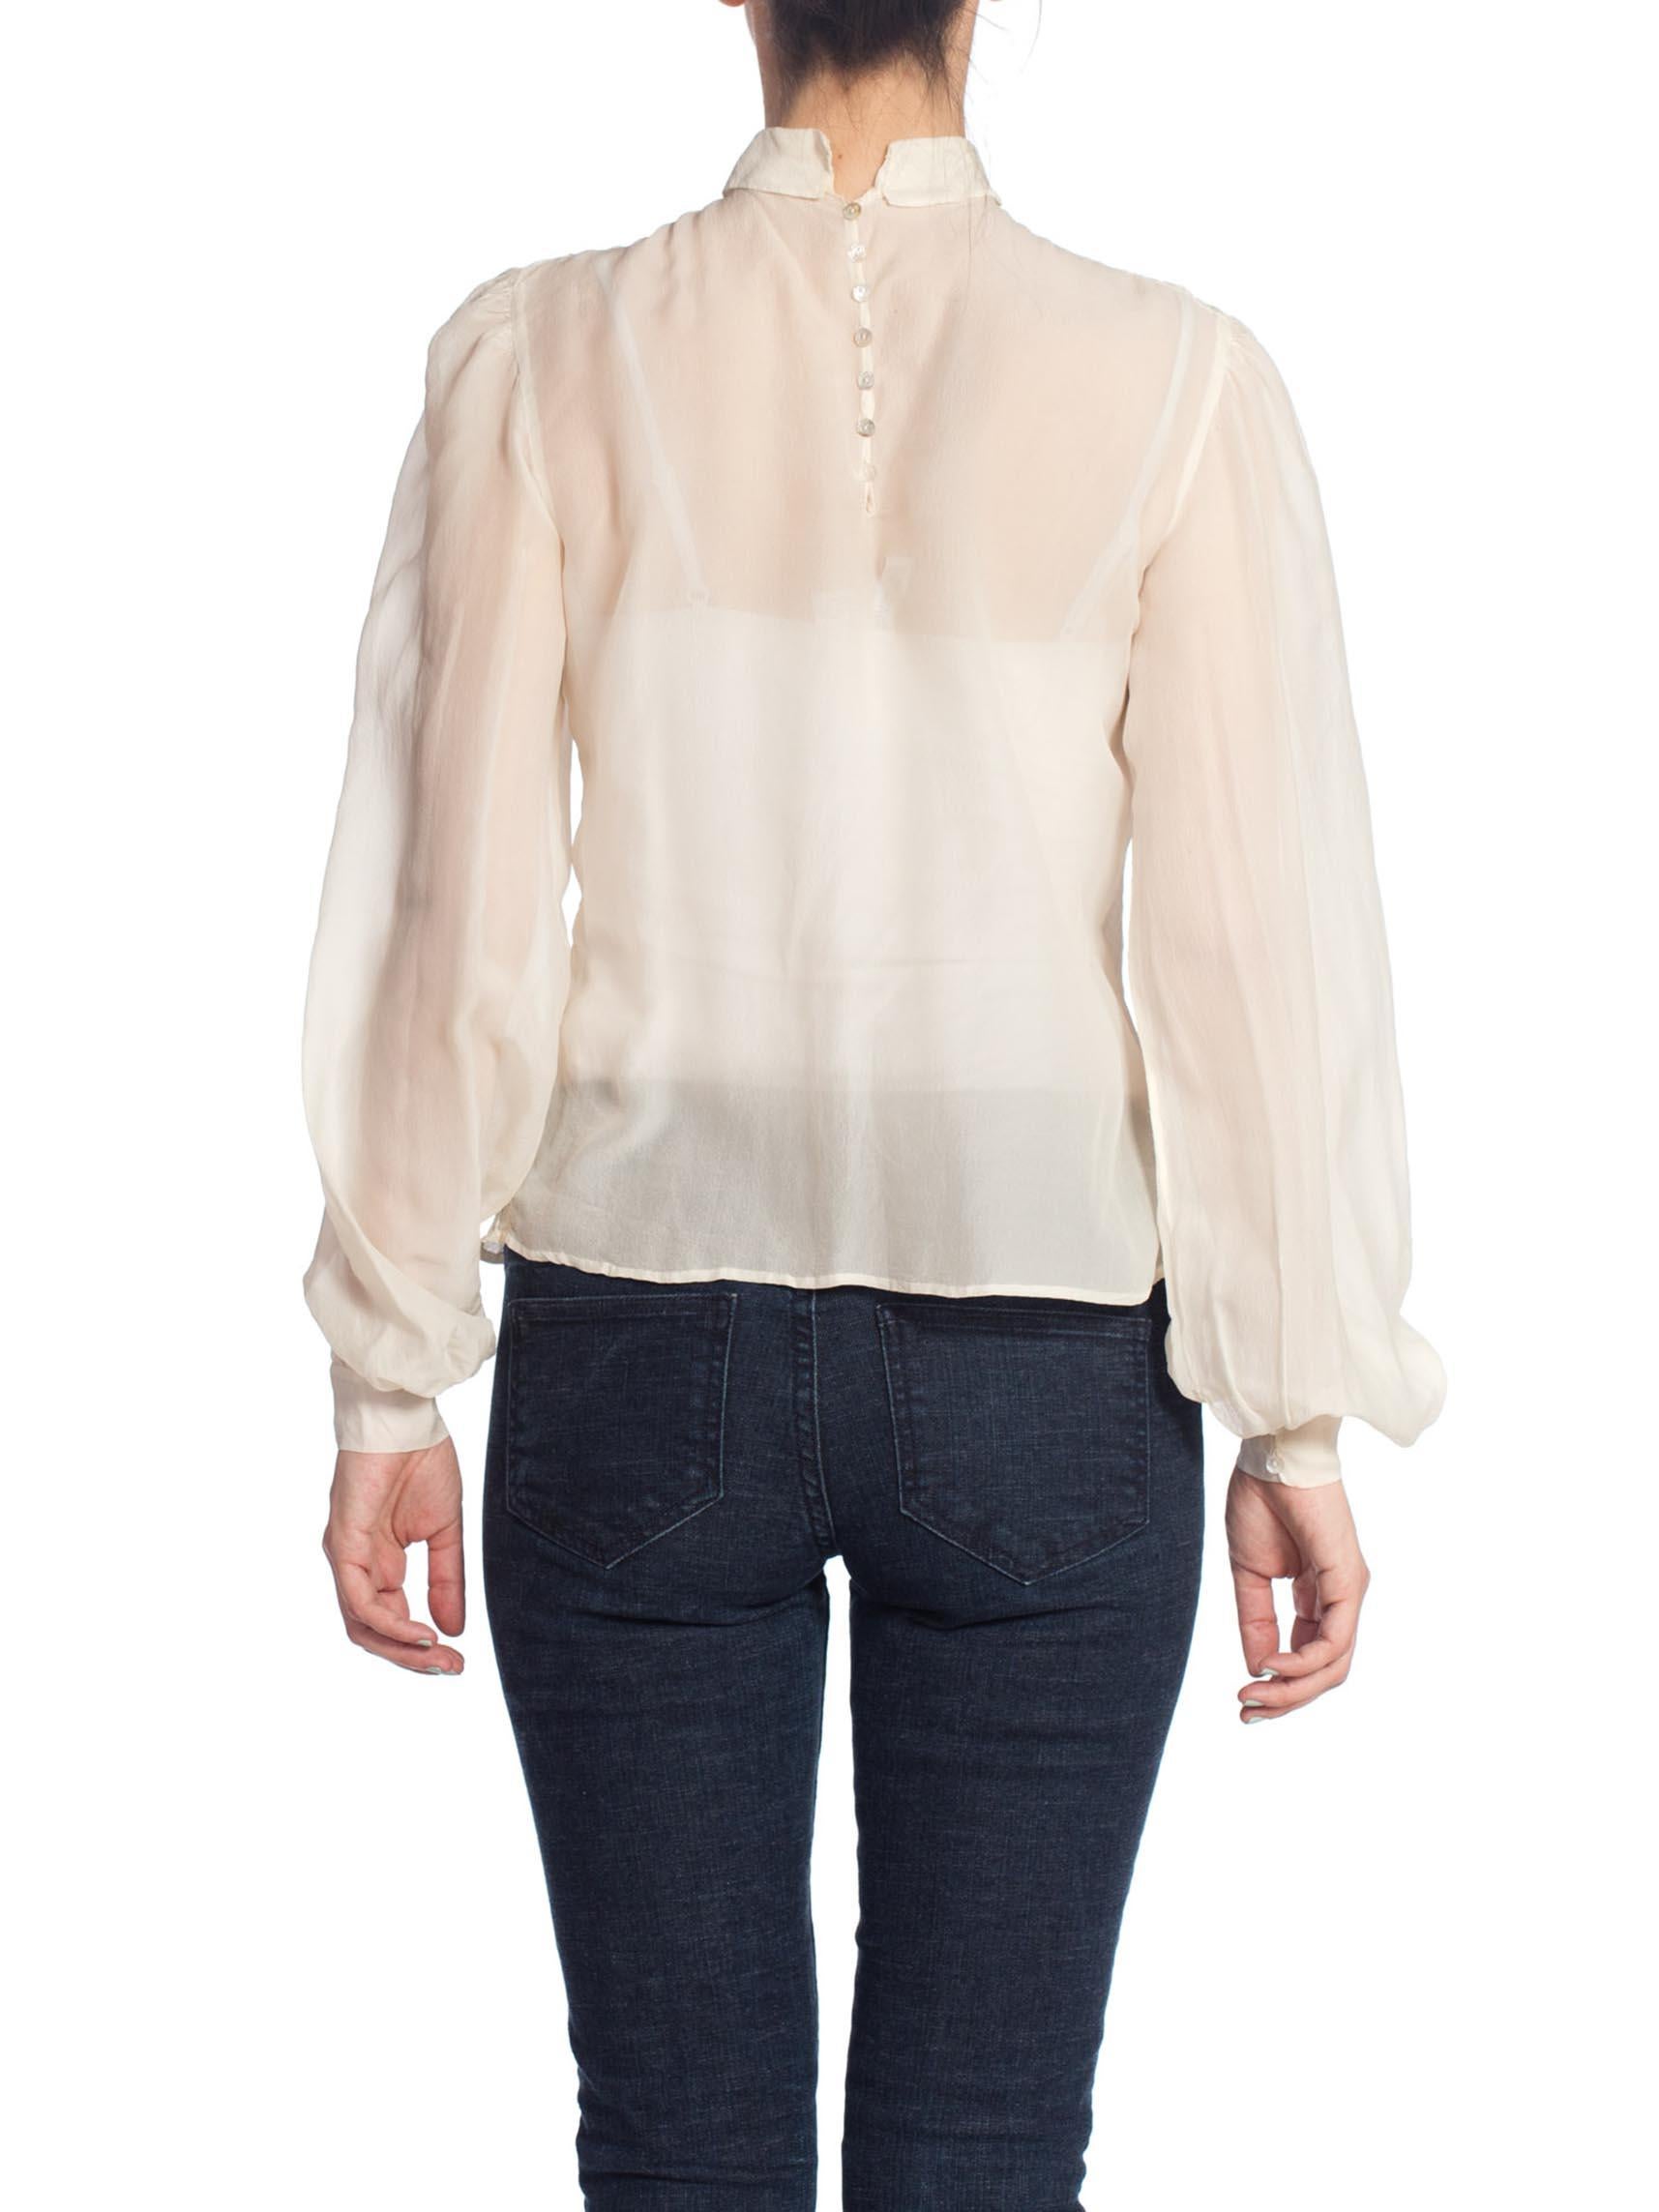 ivory chiffon blouse